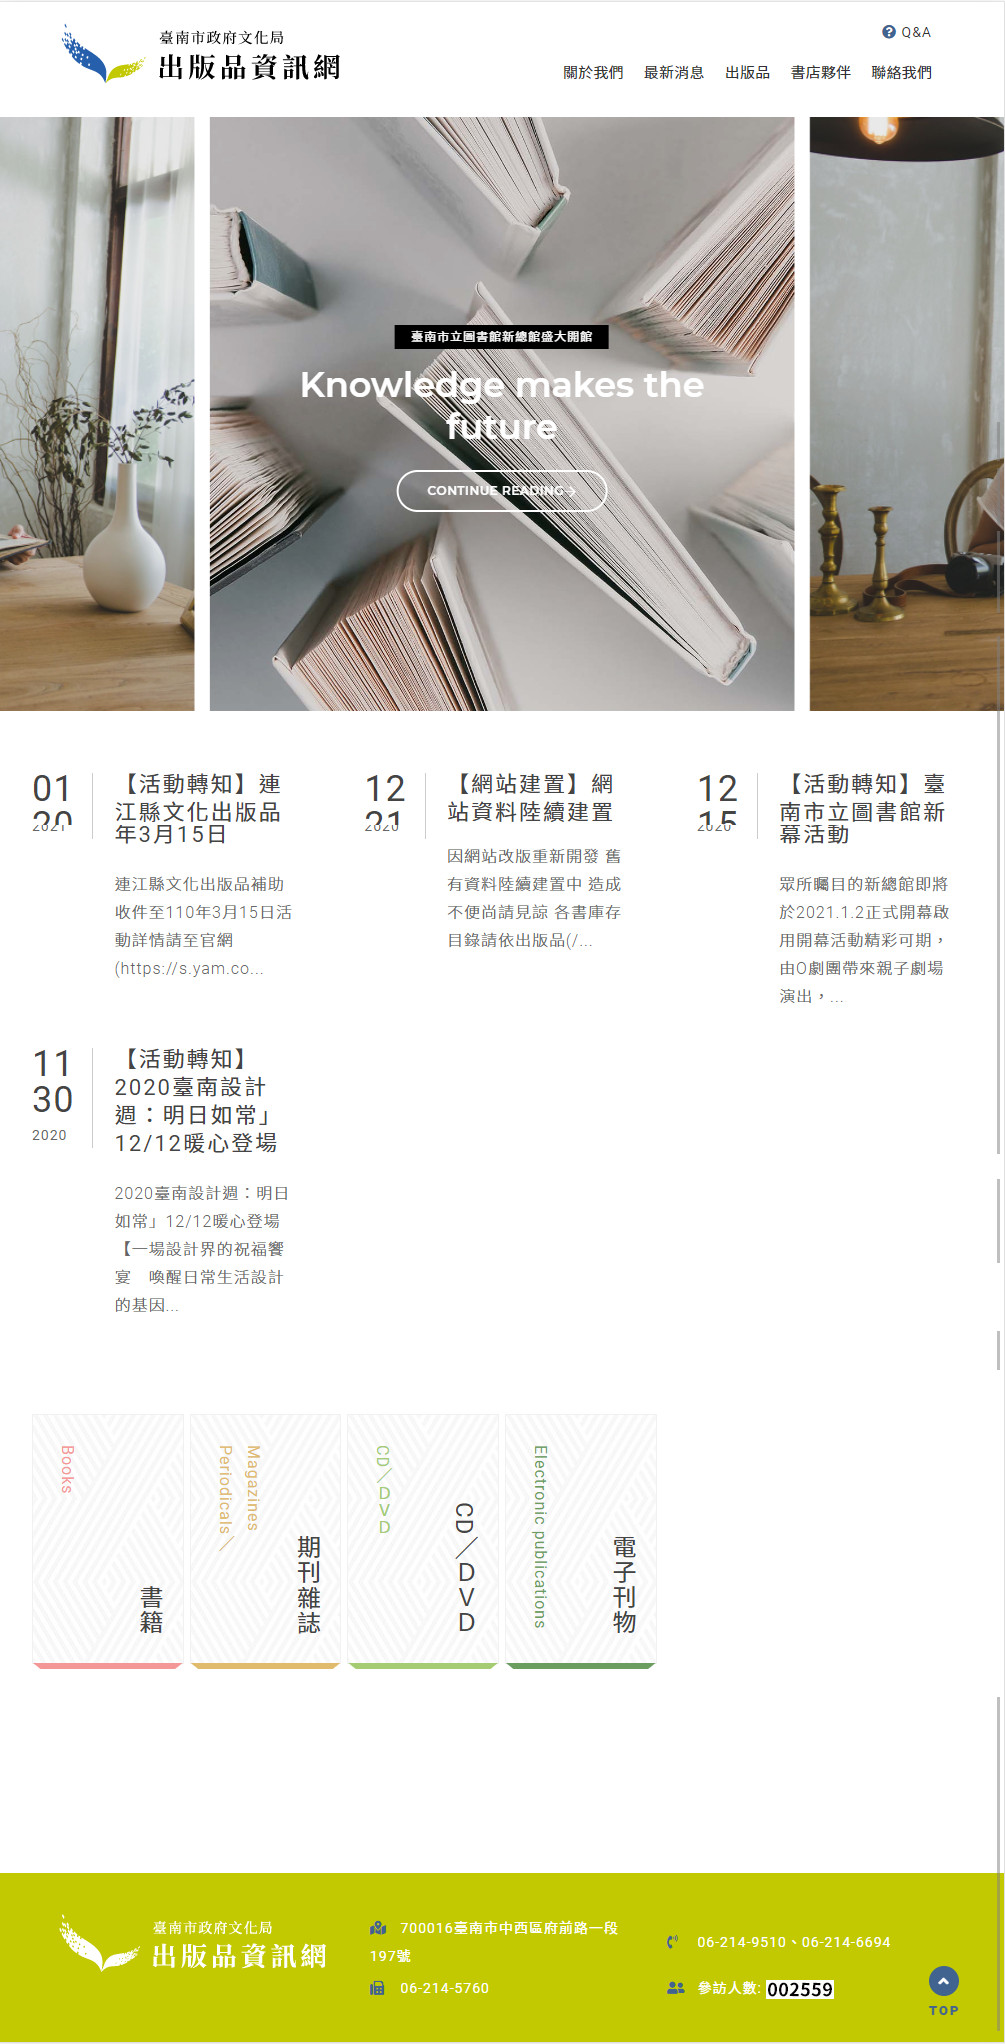 臺南市政府出版品資訊網 政府機關響應式網站設計
網站設計